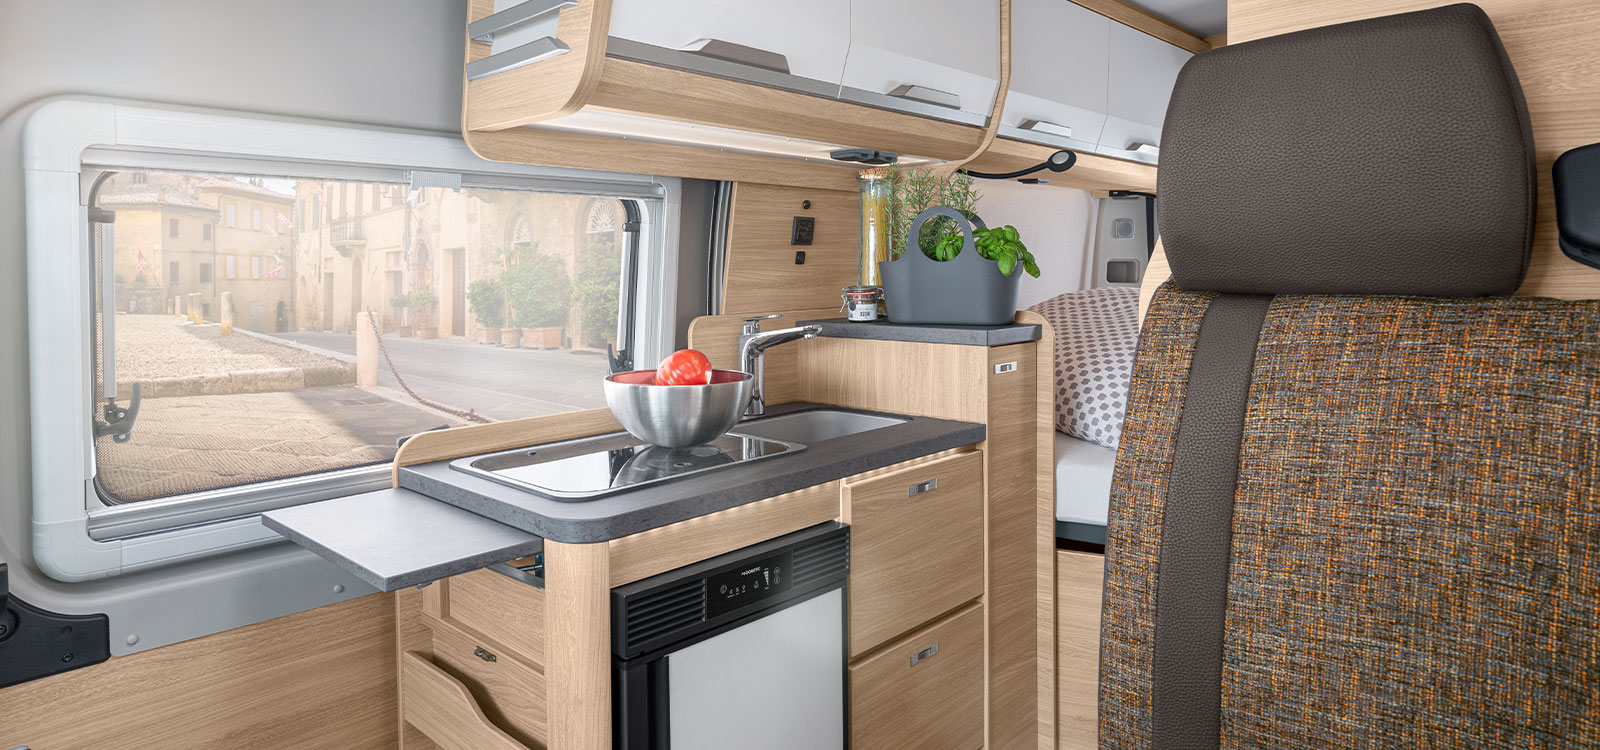 KNAUS Camper Van 2021-2022 mit Variante Kompaktküche